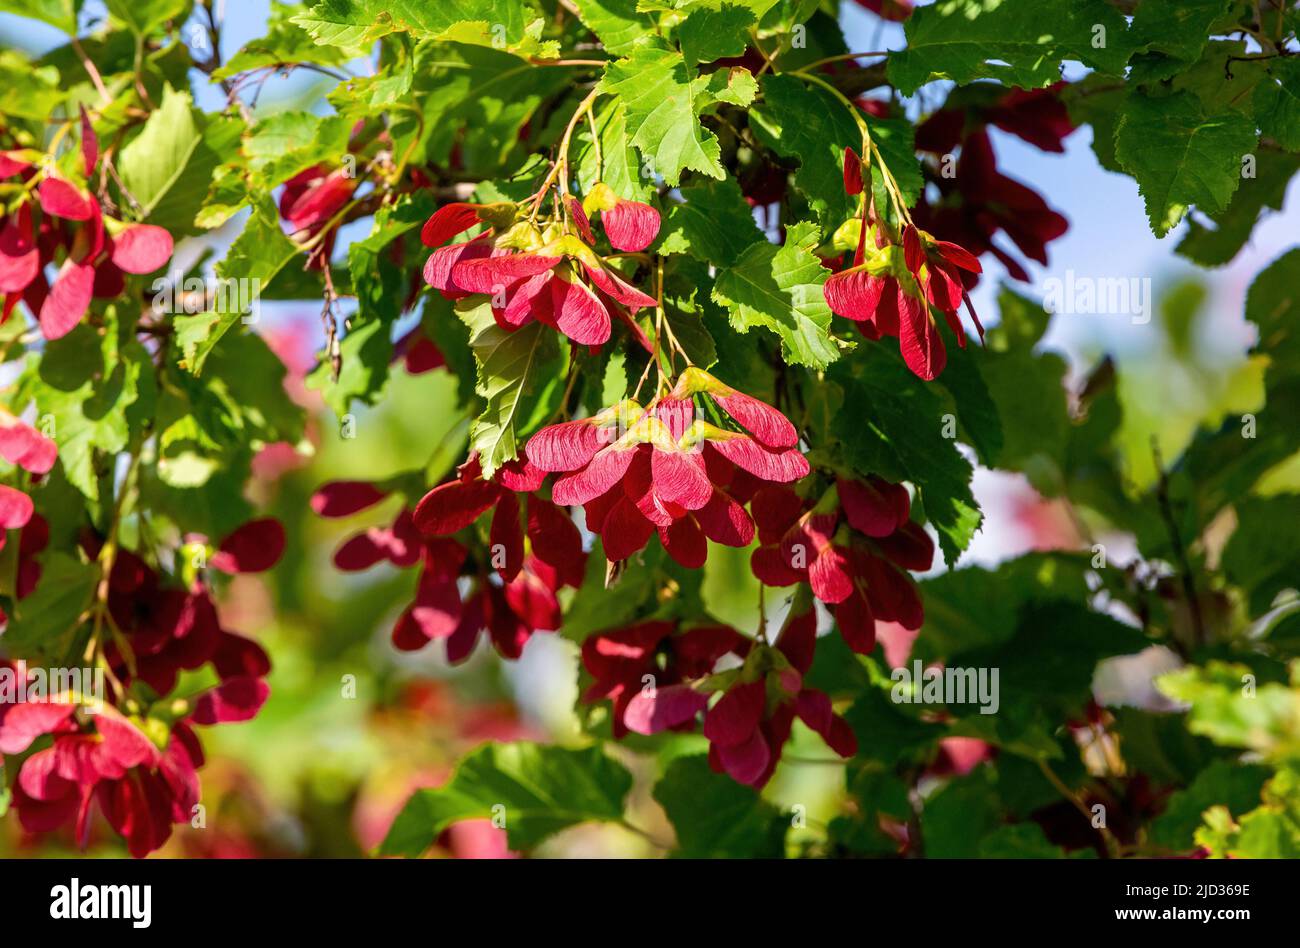 Ein tatarischer Ahornbaum namens Hot Wings mit Haufen roter samaras oder Samenschoten, die im Sommer daran hängen. Stockfoto